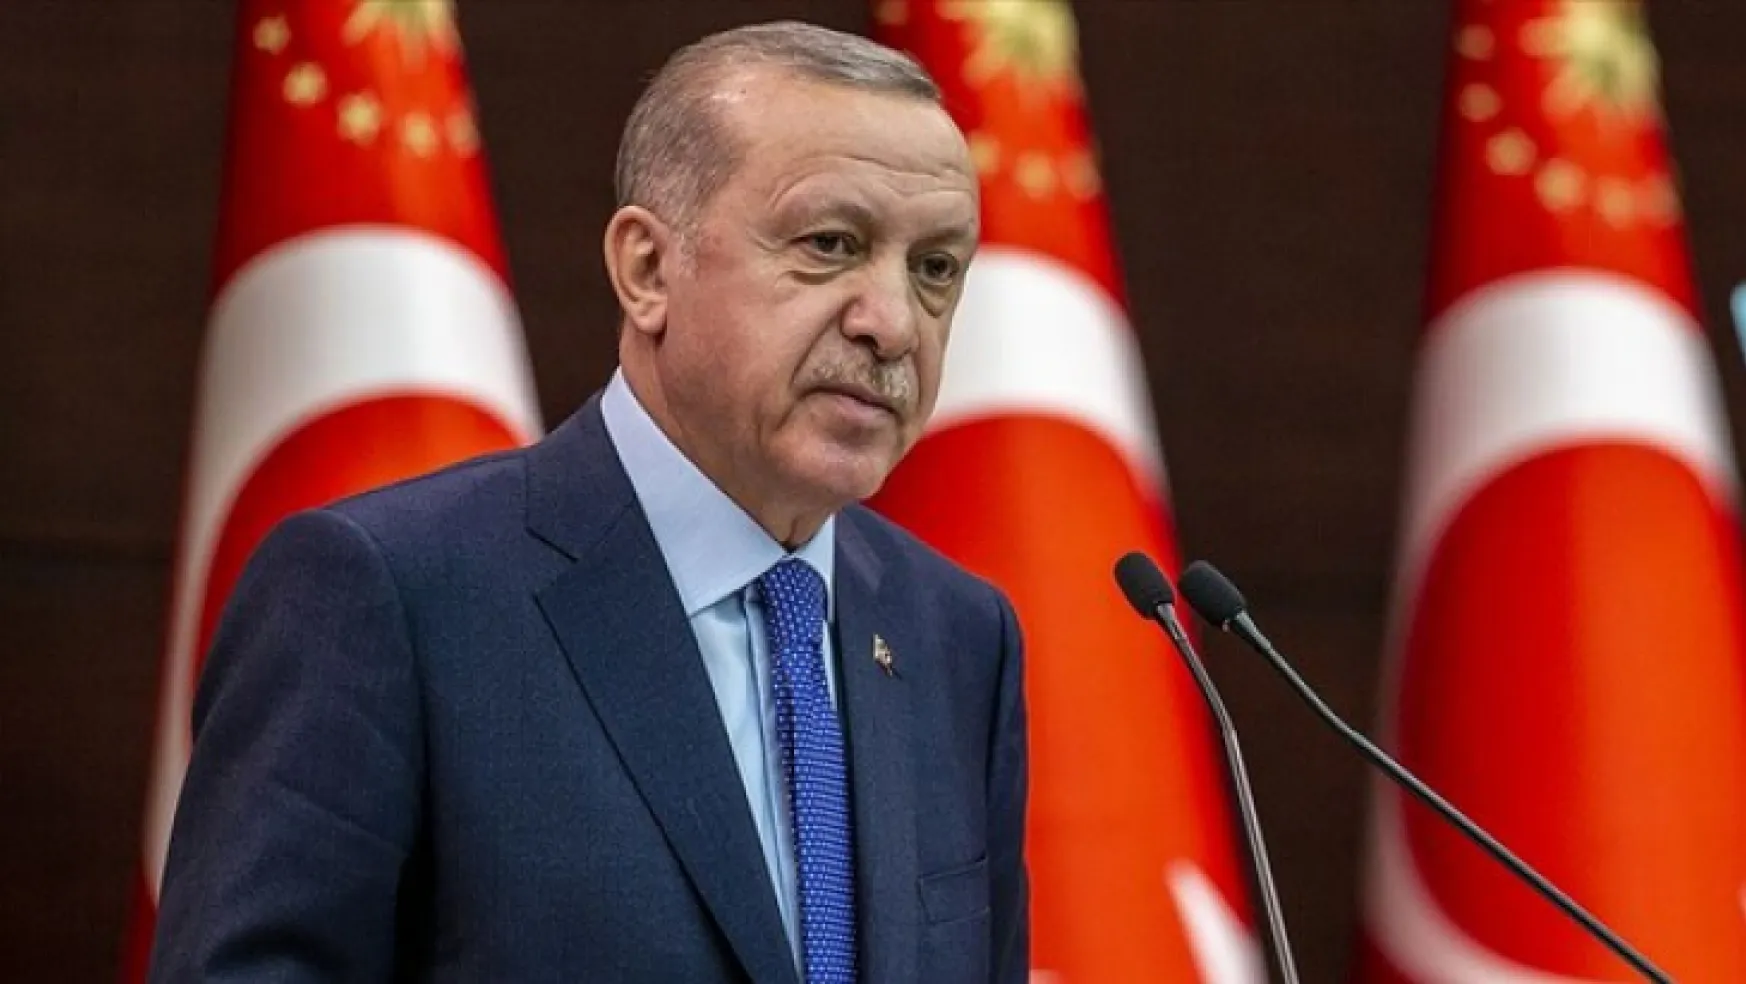 Cumhurbaşkanı Erdoğan: Enflasyonun boynunu kıracağız